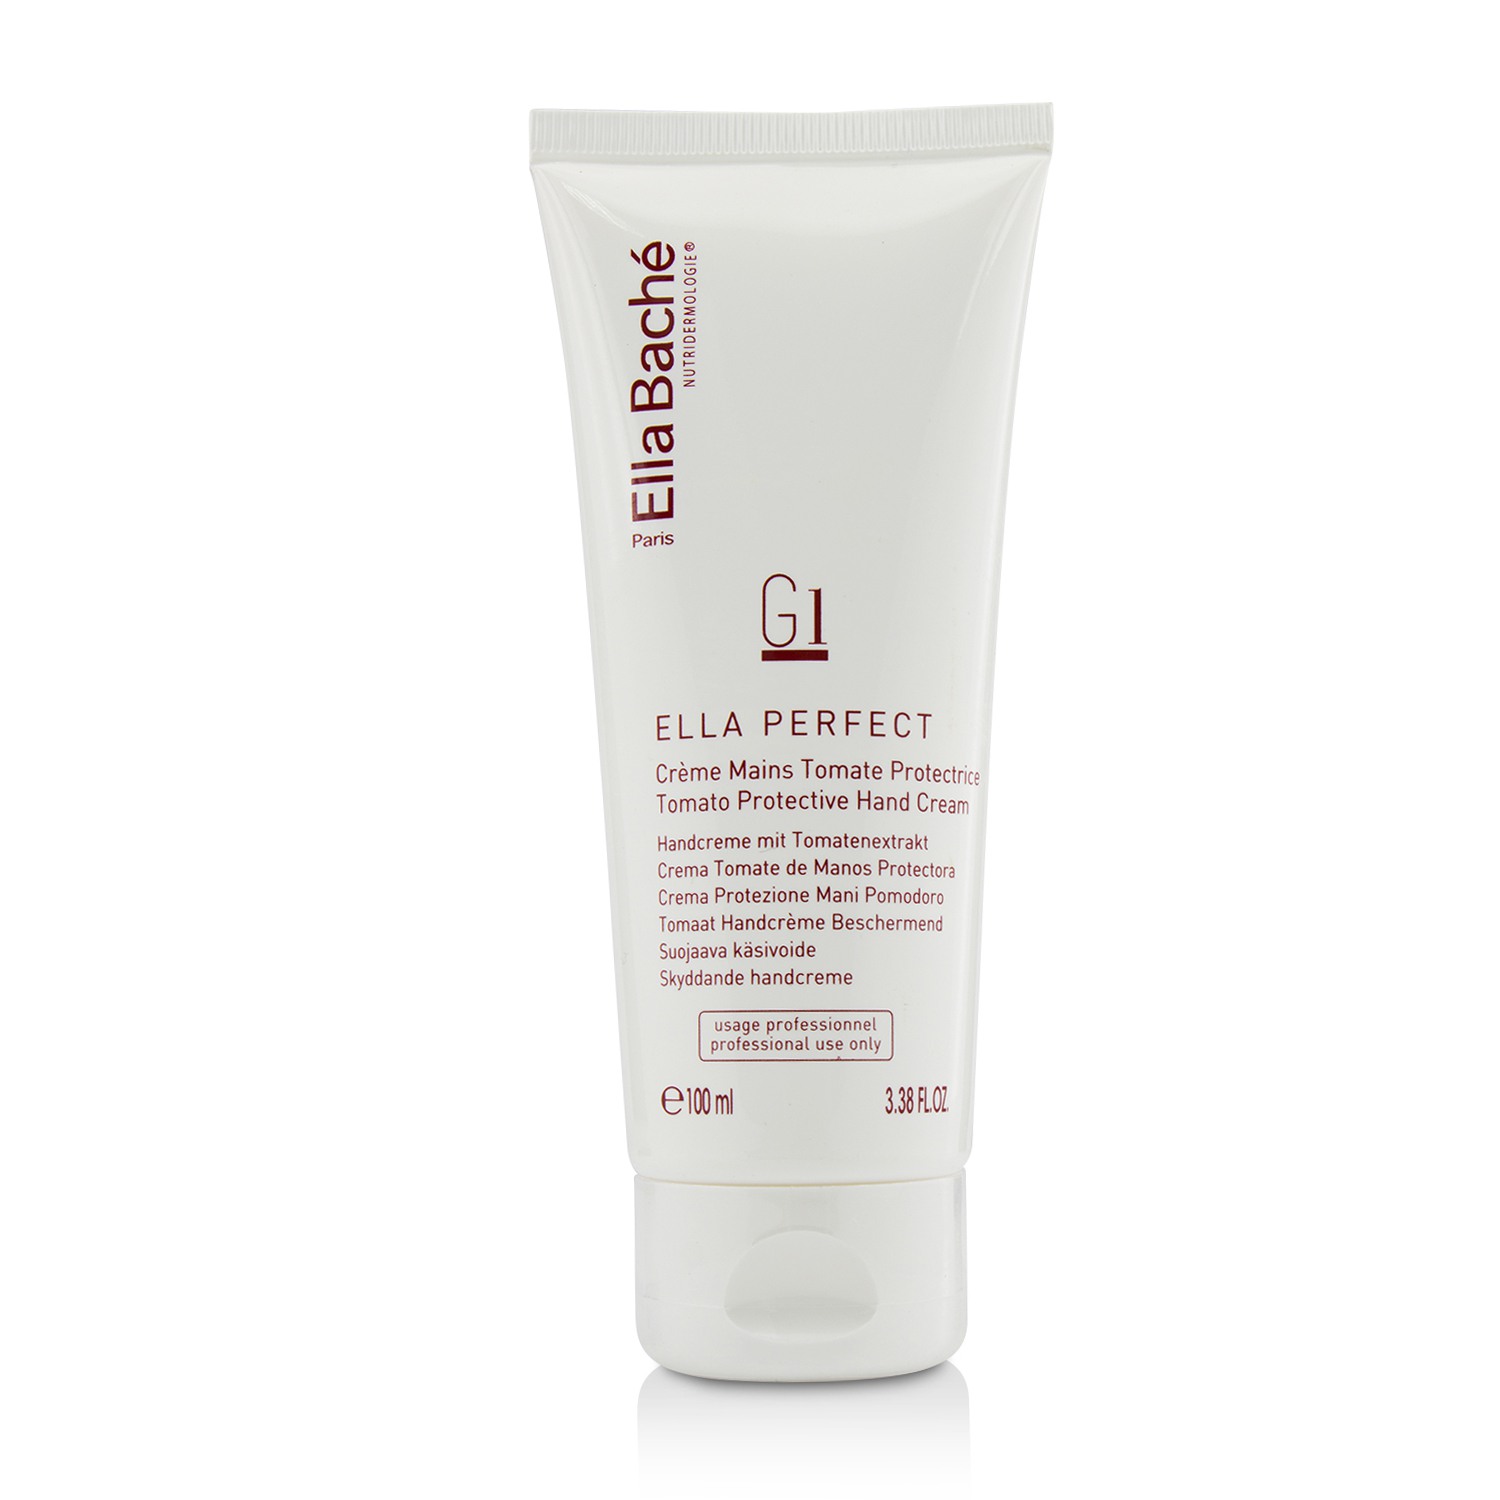 Ella Perfect Tomato Protective Hand Cream - Salon Size Ella Bache Image